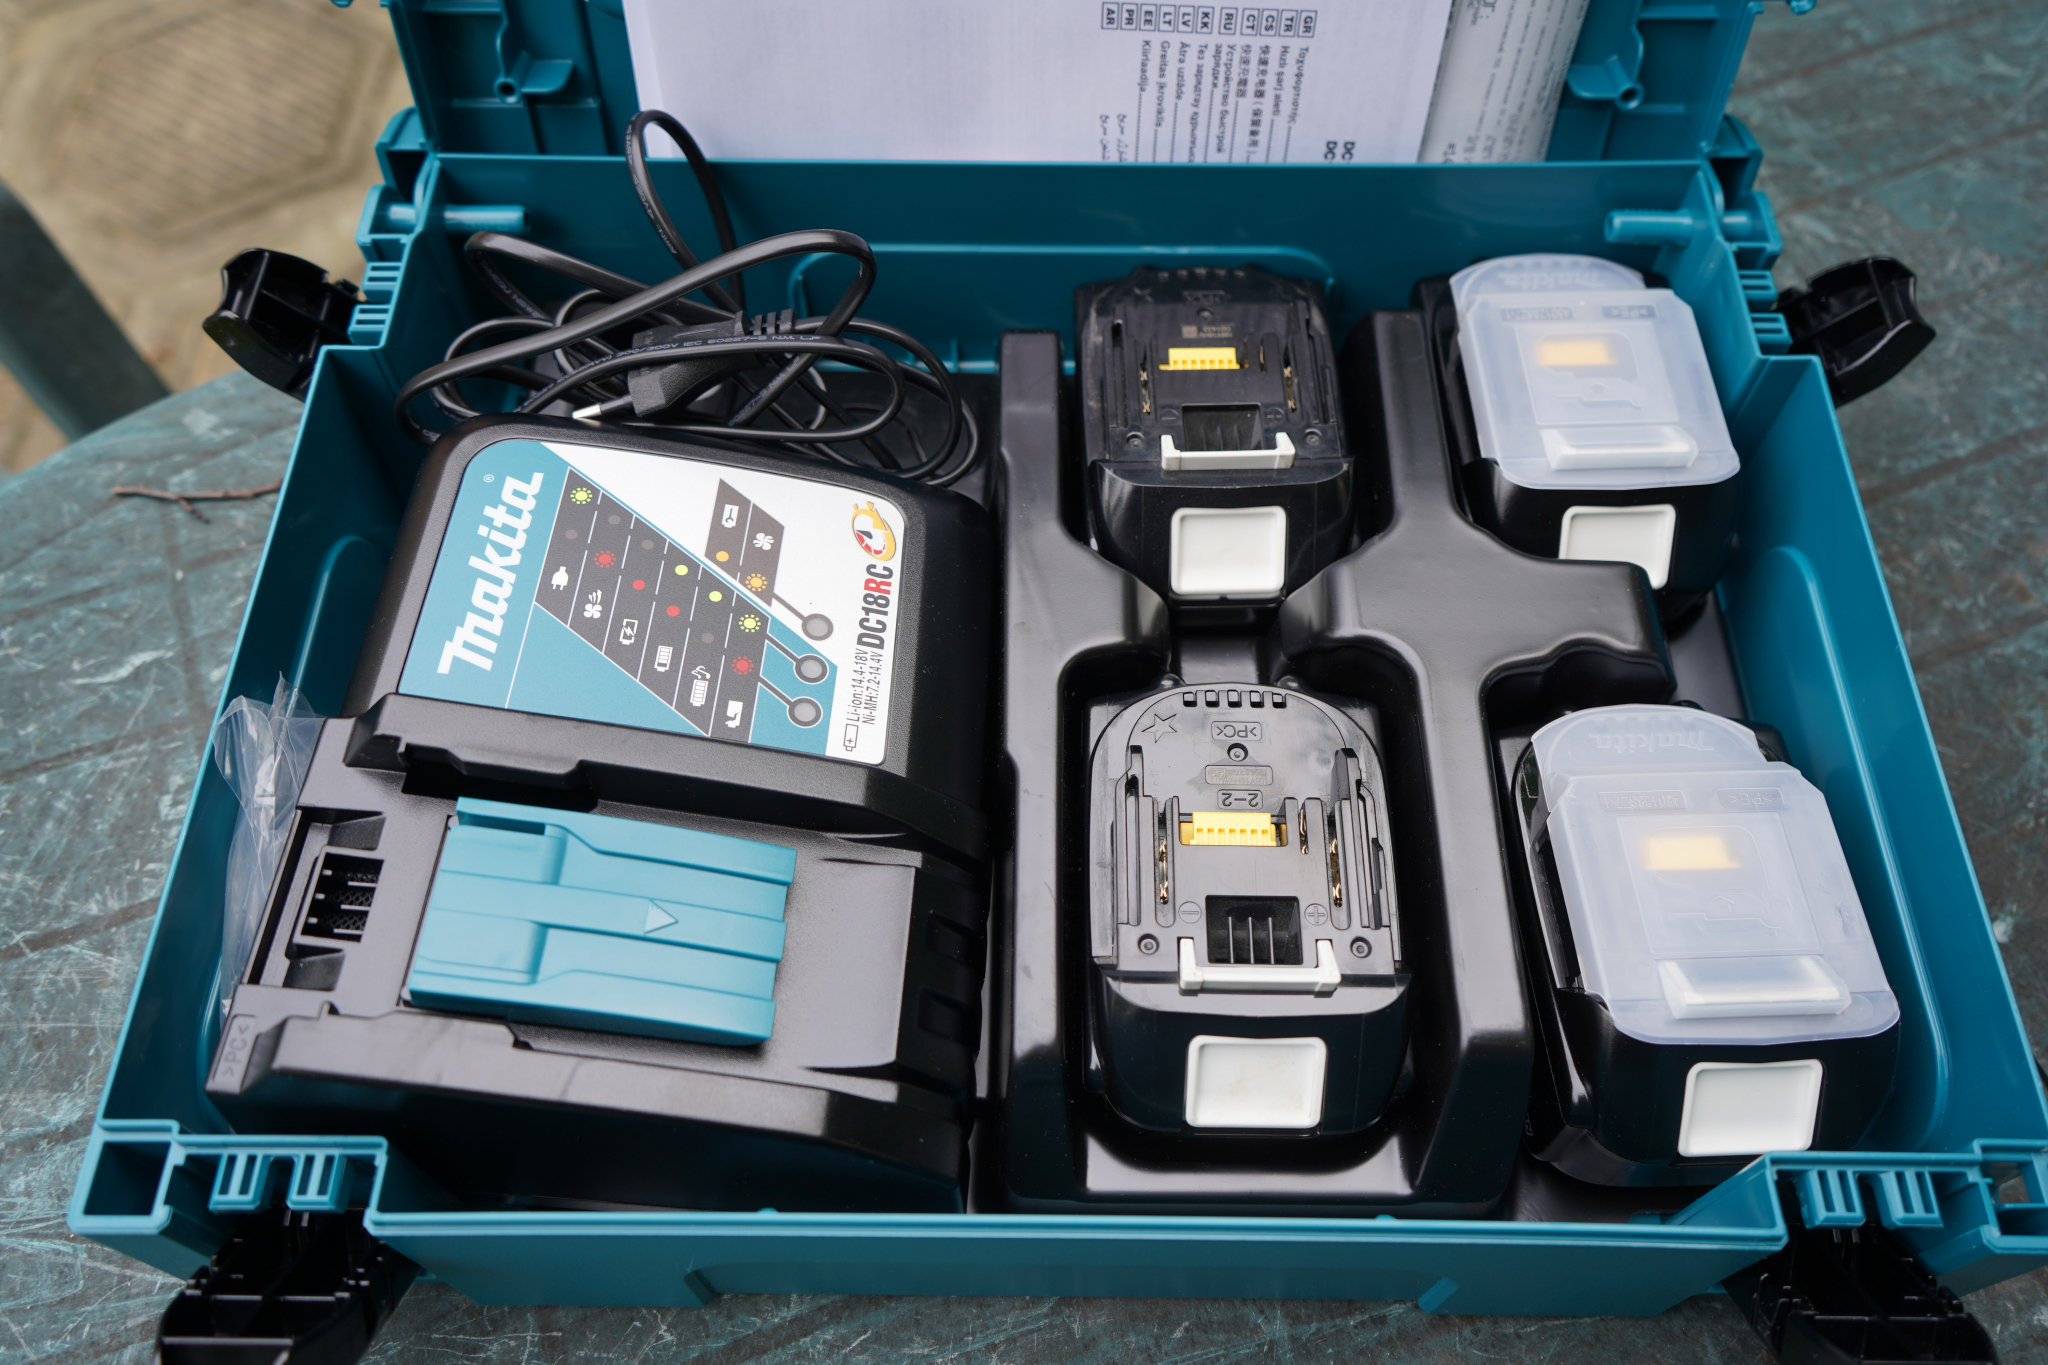 Профессиональные зарядные устройства: тест моделей Bosch BAT645 и BAT690